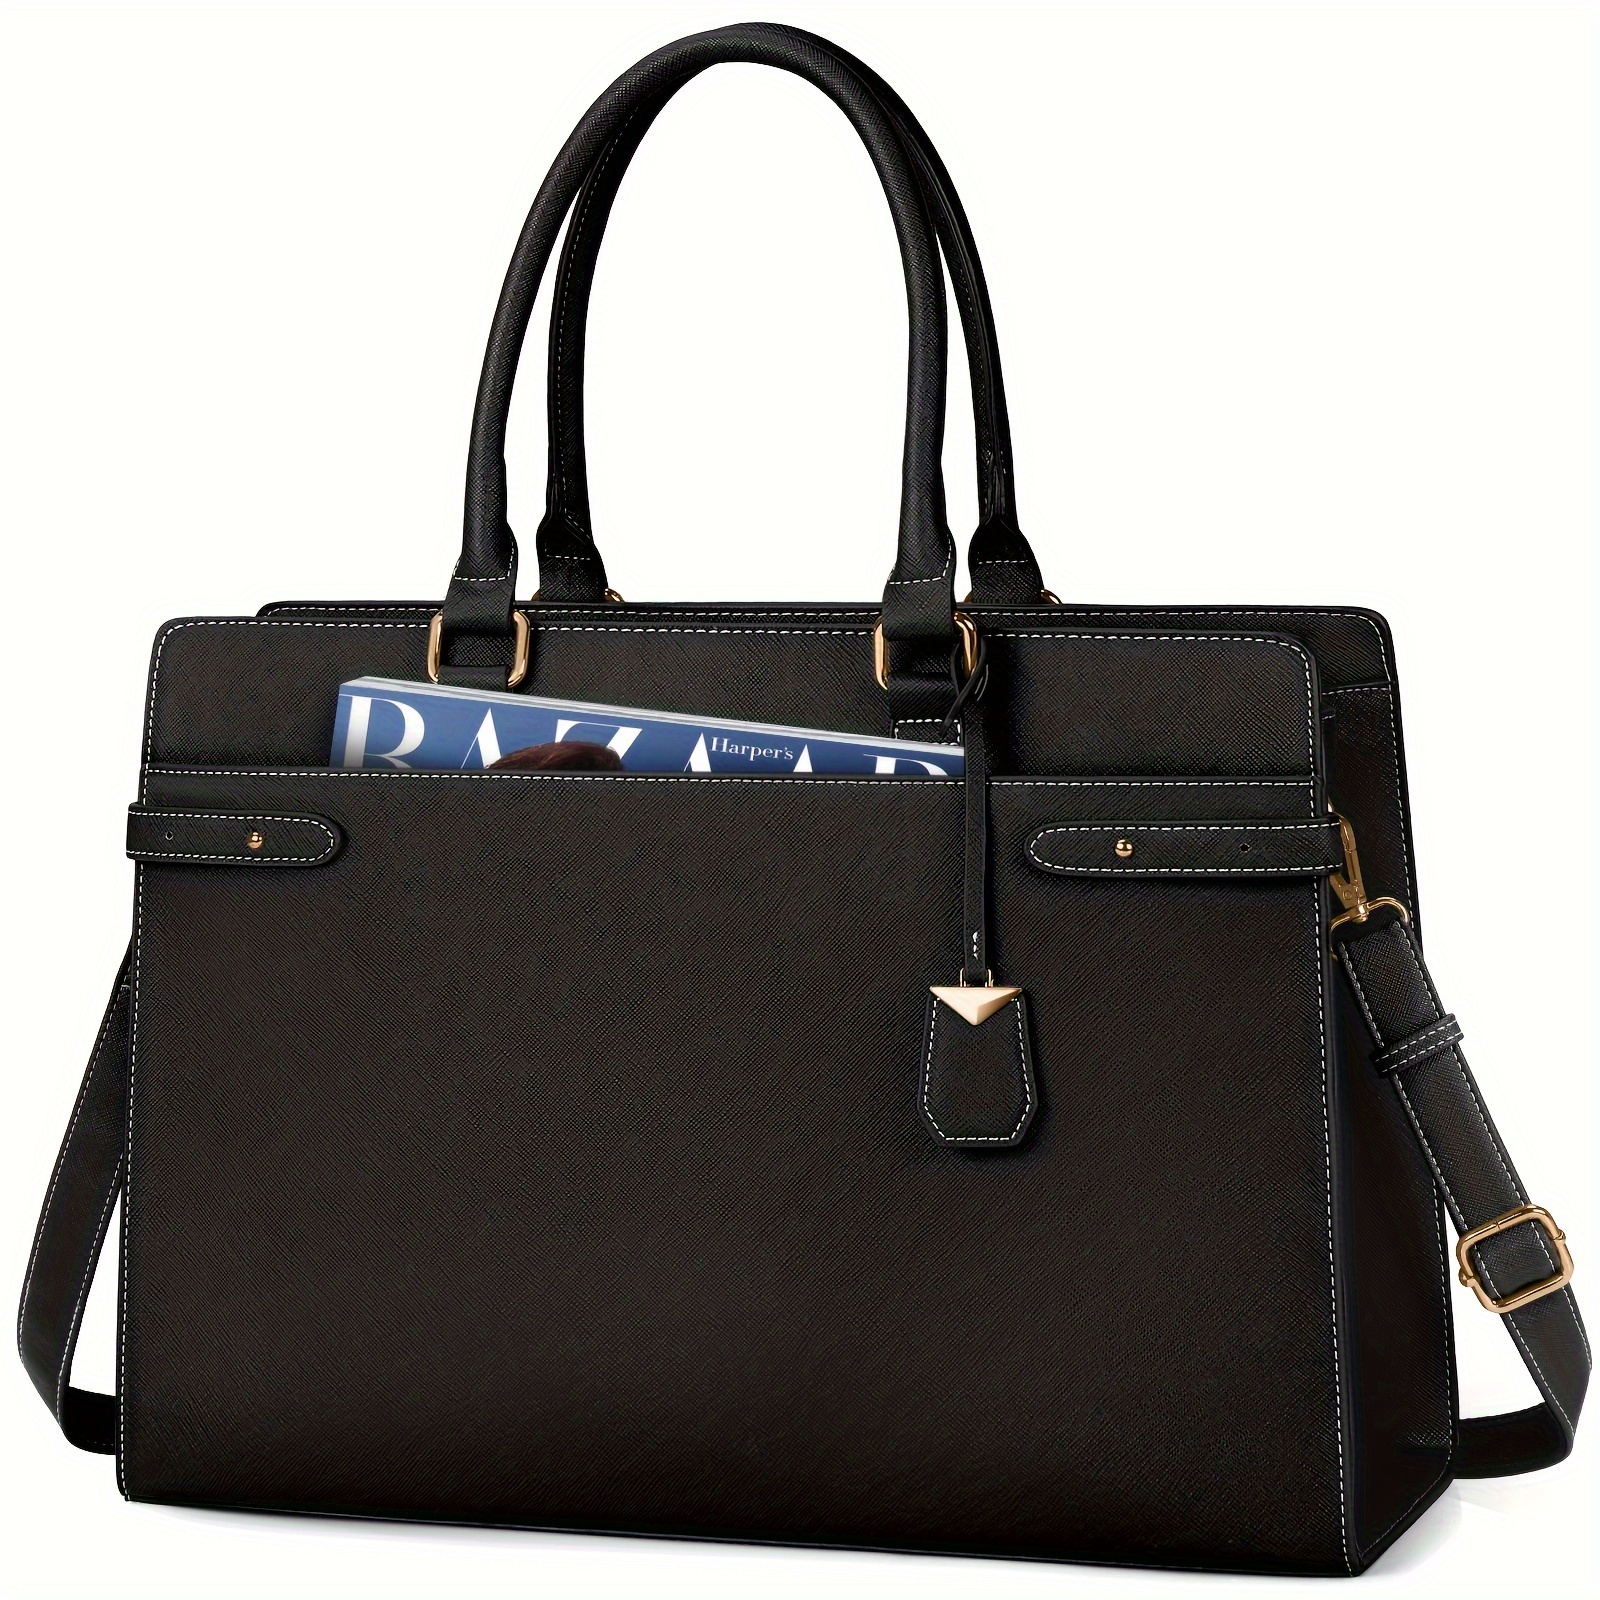 

Igolumon Shopper Ladies Handbag Large Laptop Bag 15.6 Inch Business Bag Pu Leather Work Bag Briefcase Shoulder Bag For Office School Travelling